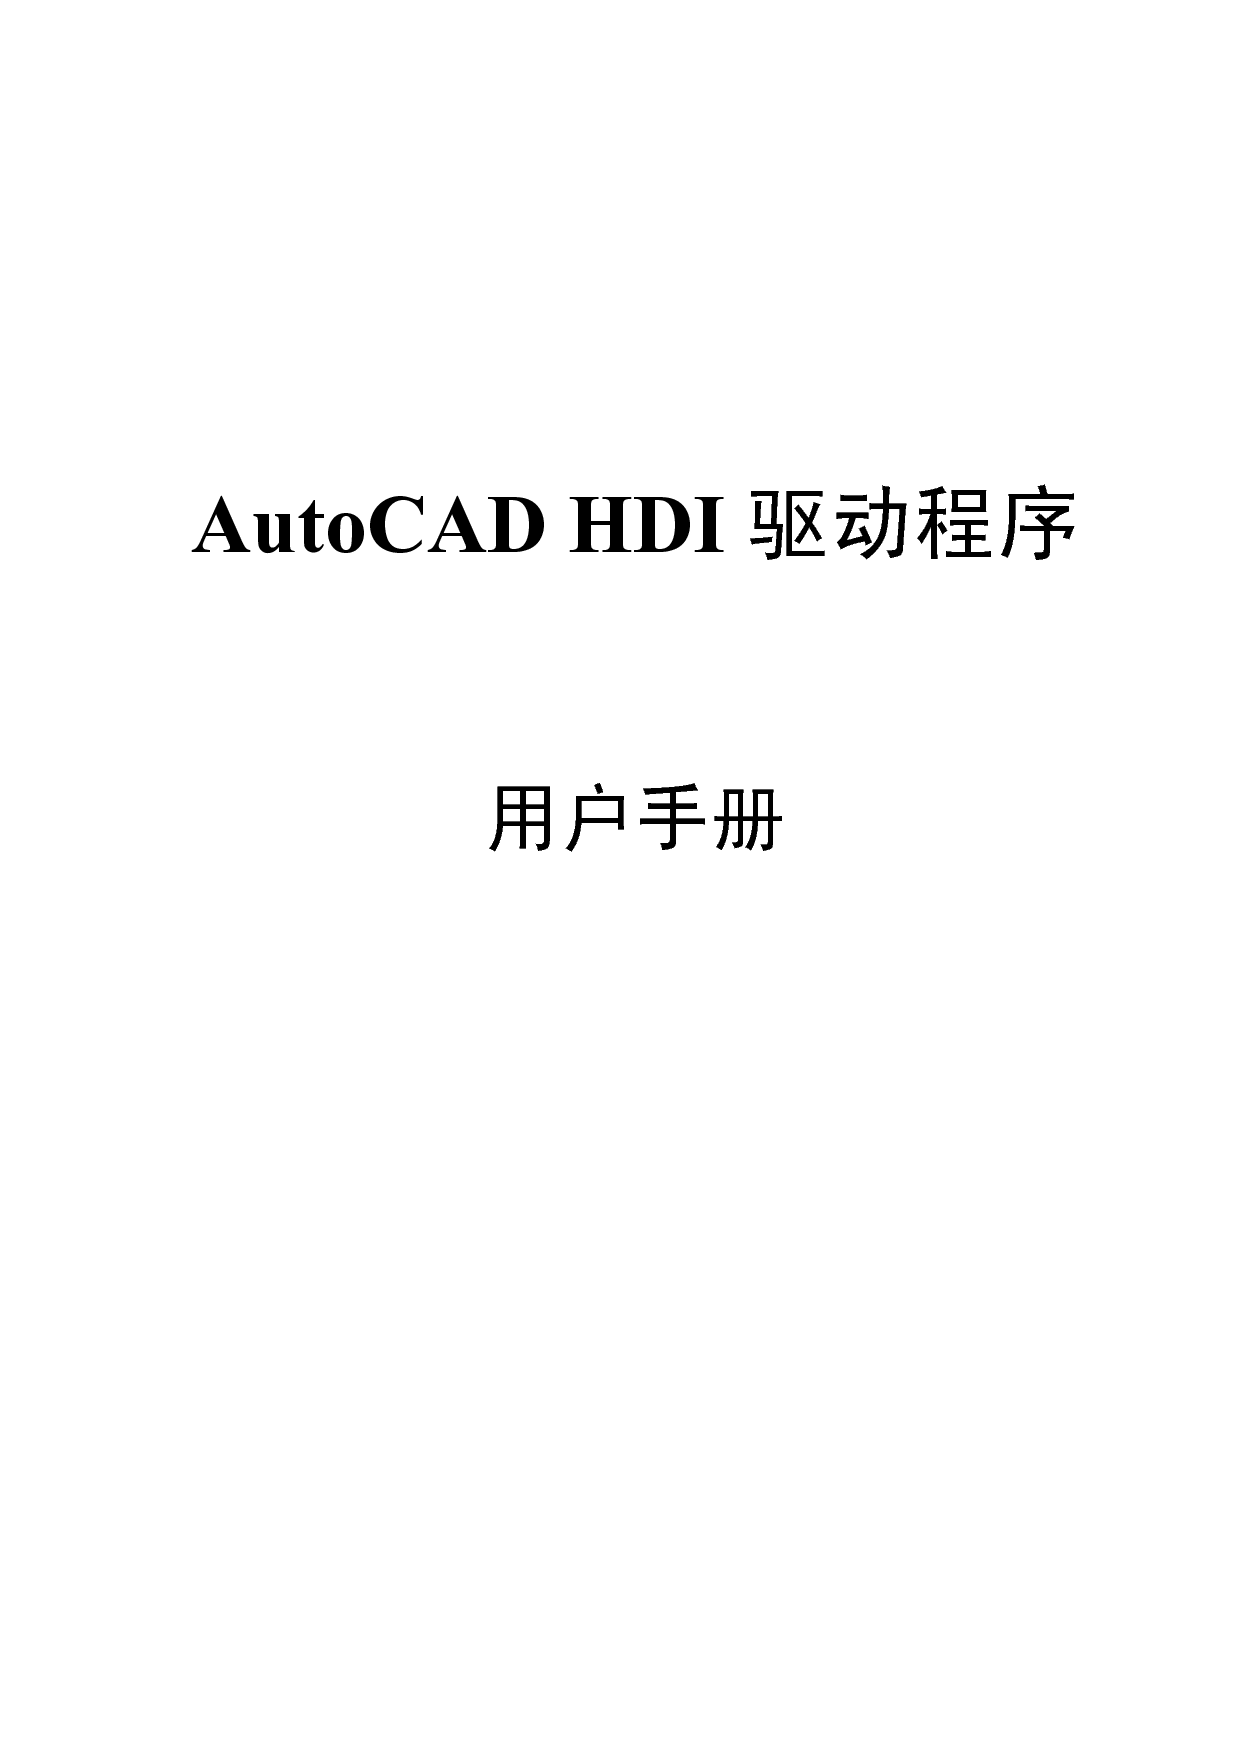 京瓷 Kyocera KM-4800W AutoCAD HDI 驱动程序 用户手册 封面